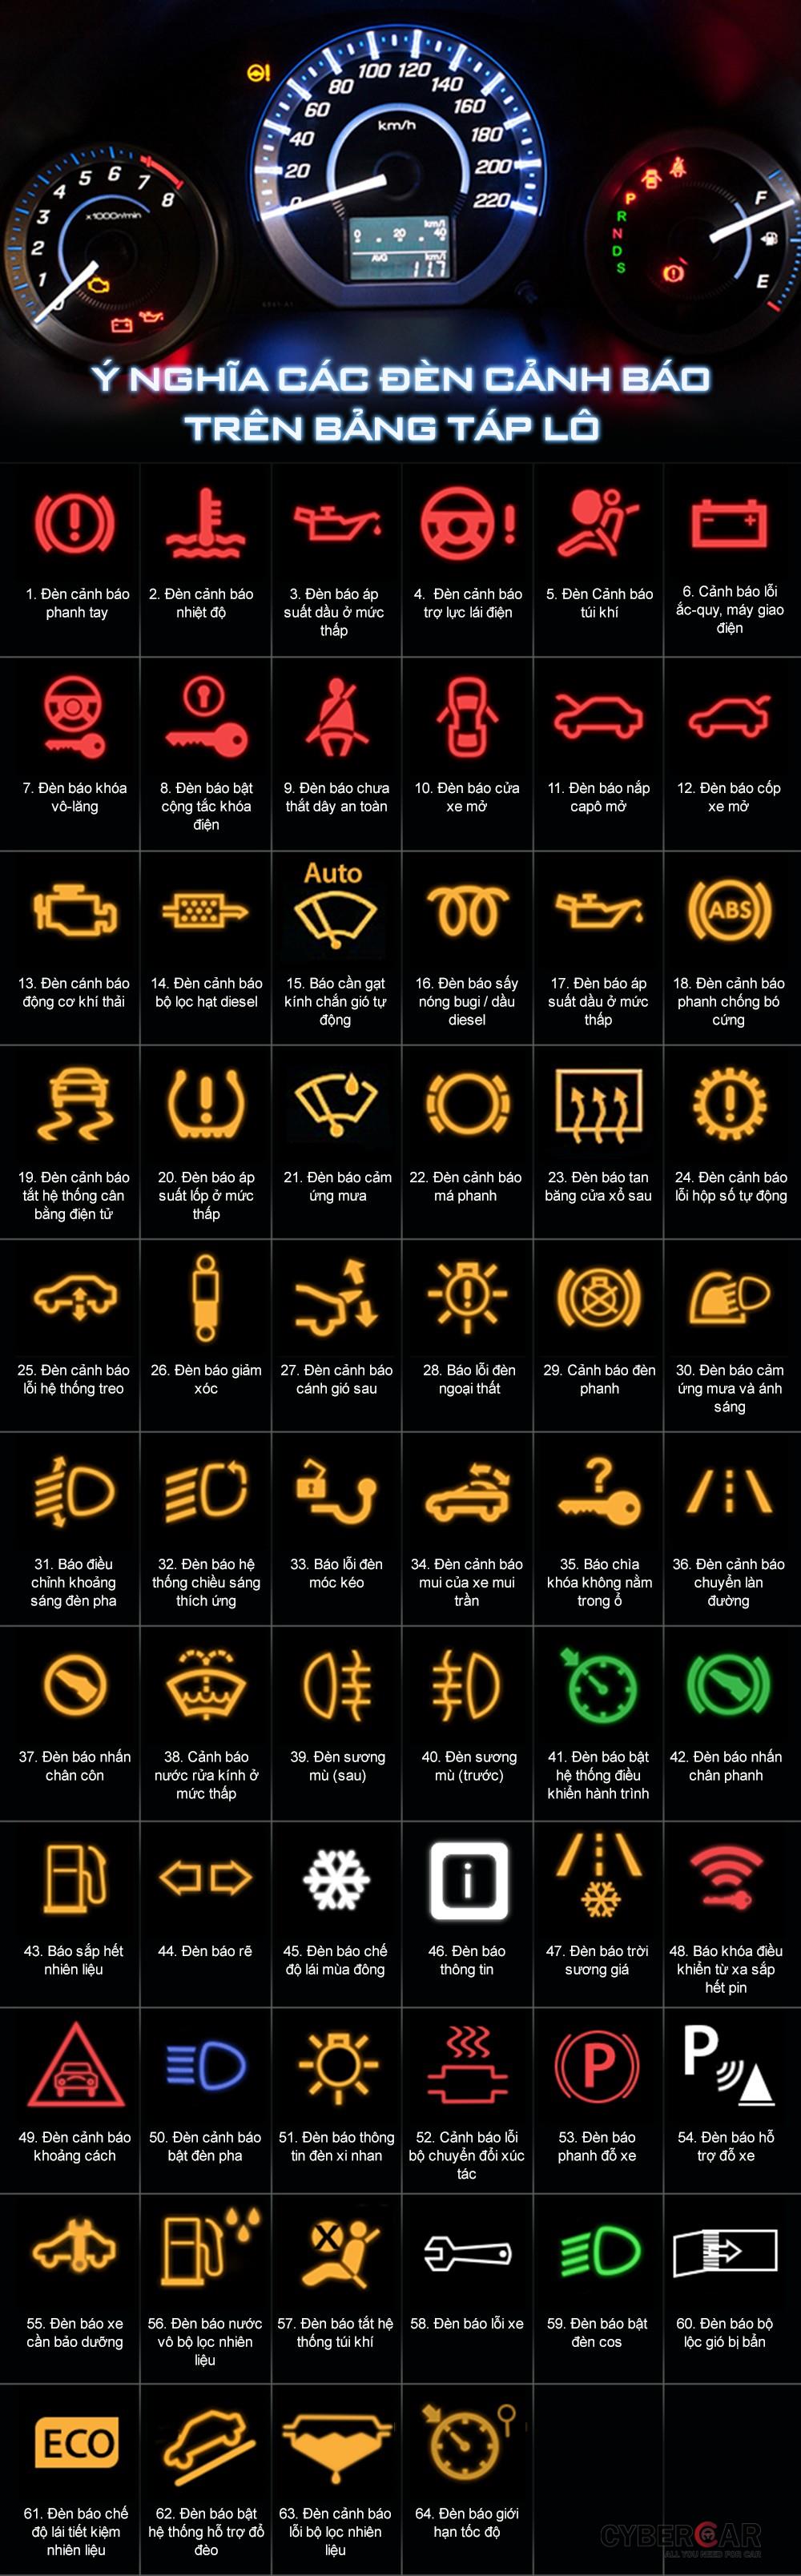 Ký hiệu các và ý nghĩa của các đèn báo lỗi trên ô tô.